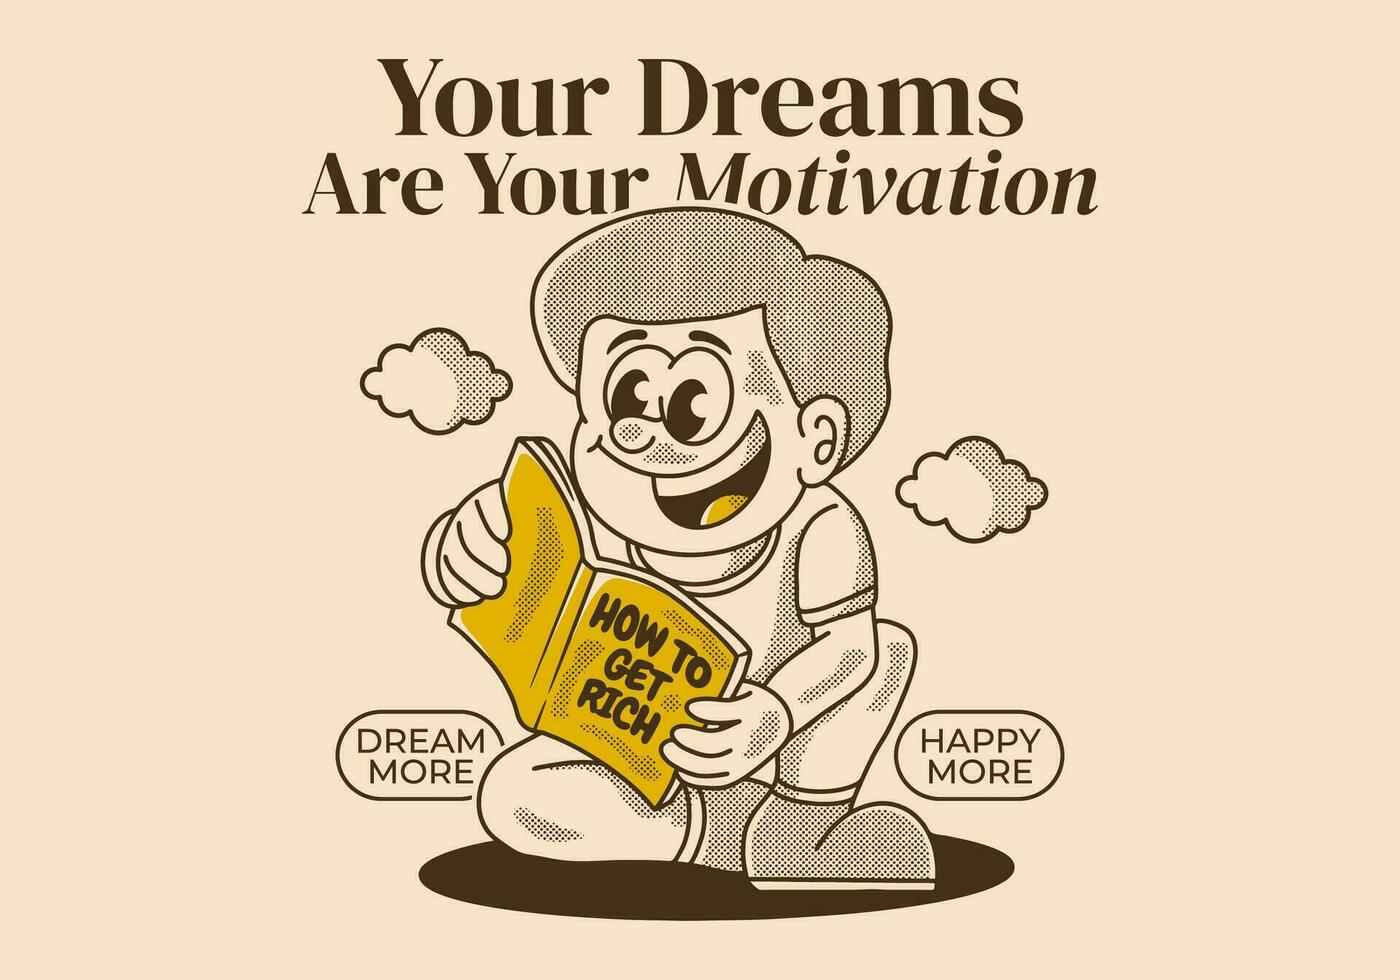 din dröm är din motivering. årgång illustration av en pojke läsning en bok vektor